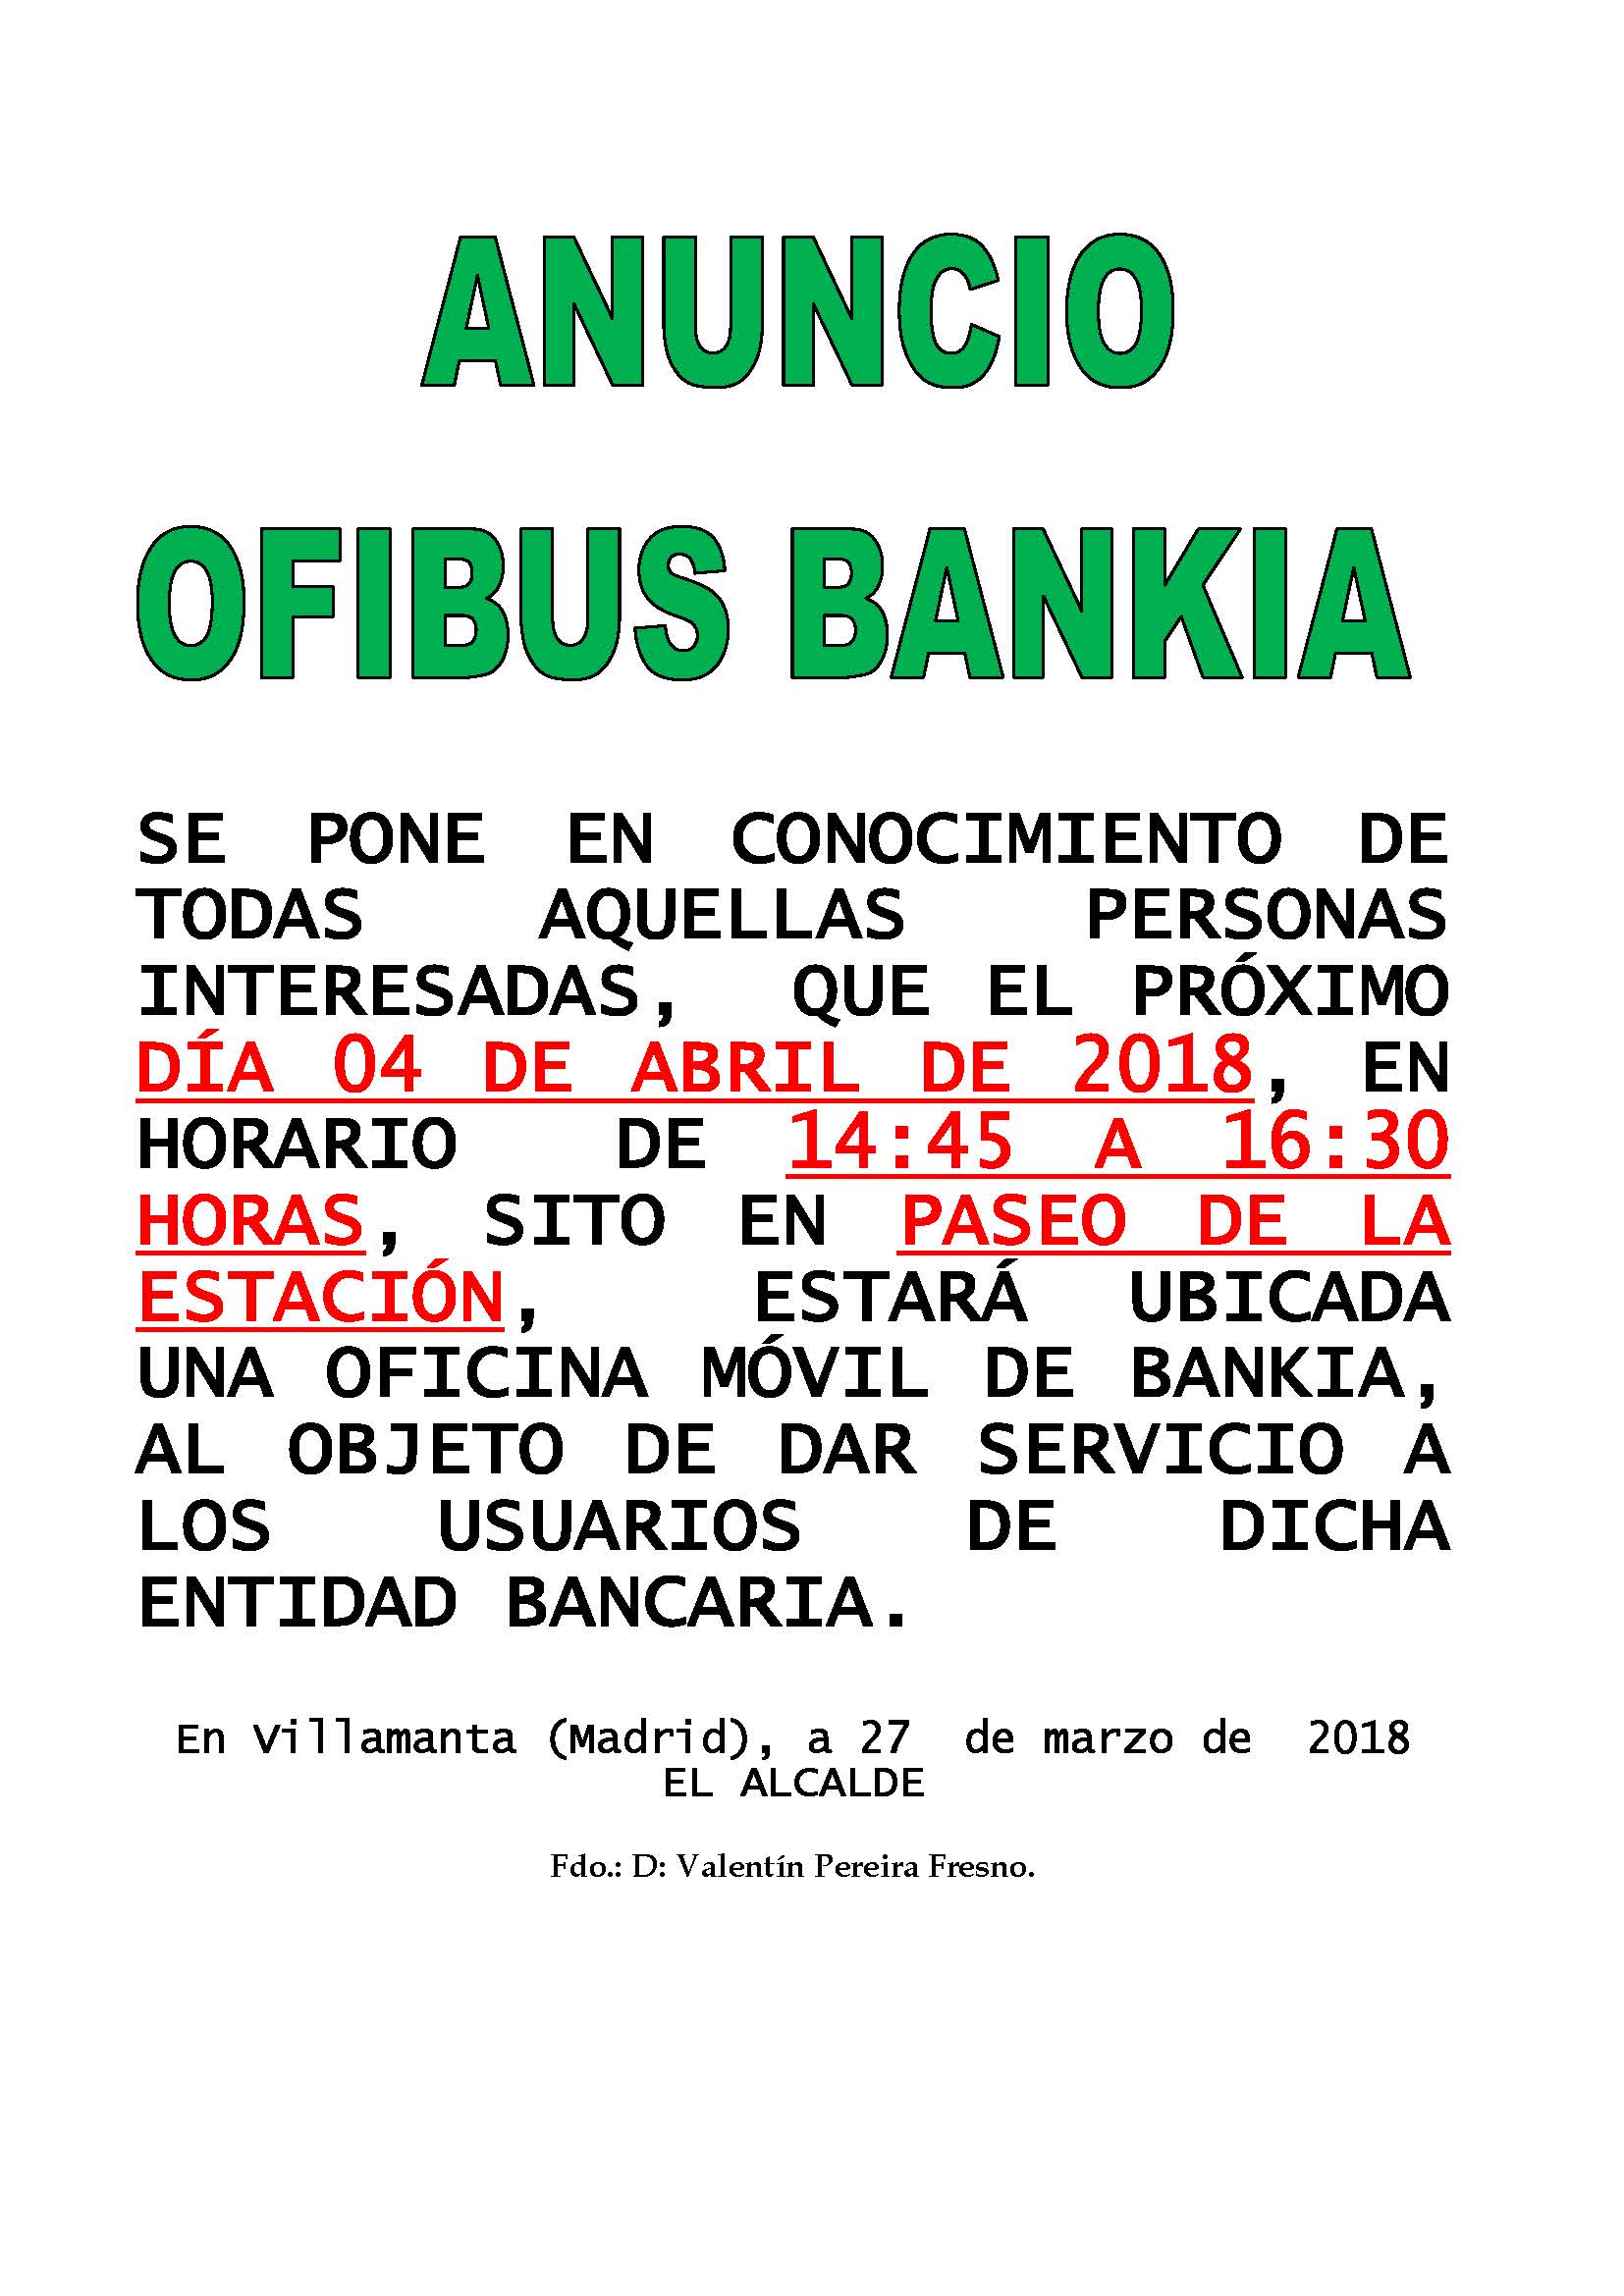 Ofibus Bankia 4 de abril de 2018